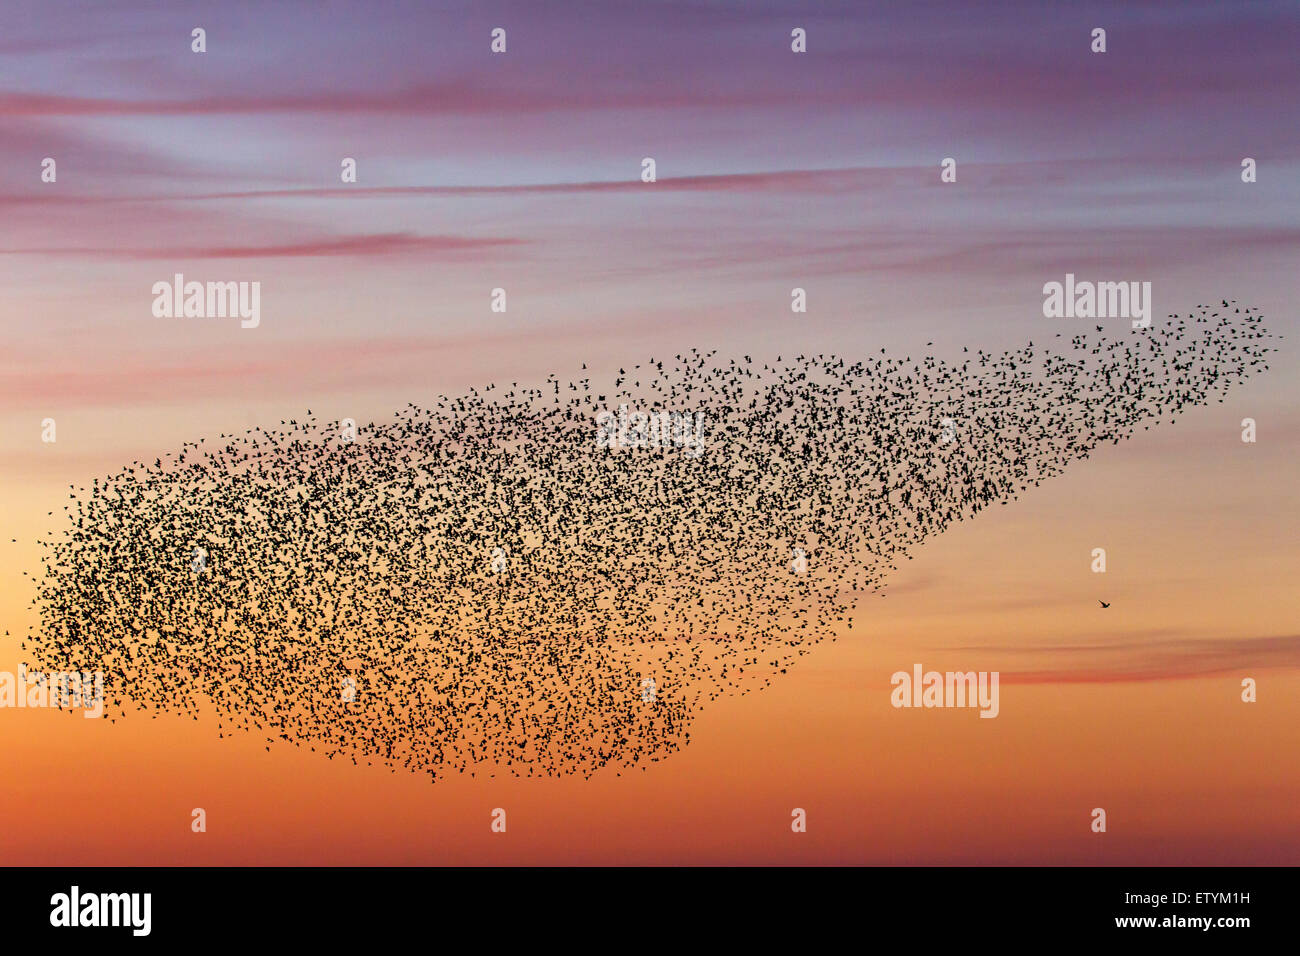 Europäische Starling Murmuration / große Herde von gemeinsamen Stare (Sturnus Vulgaris) und Raubvogel im Flug bei Sonnenuntergang Stockfoto